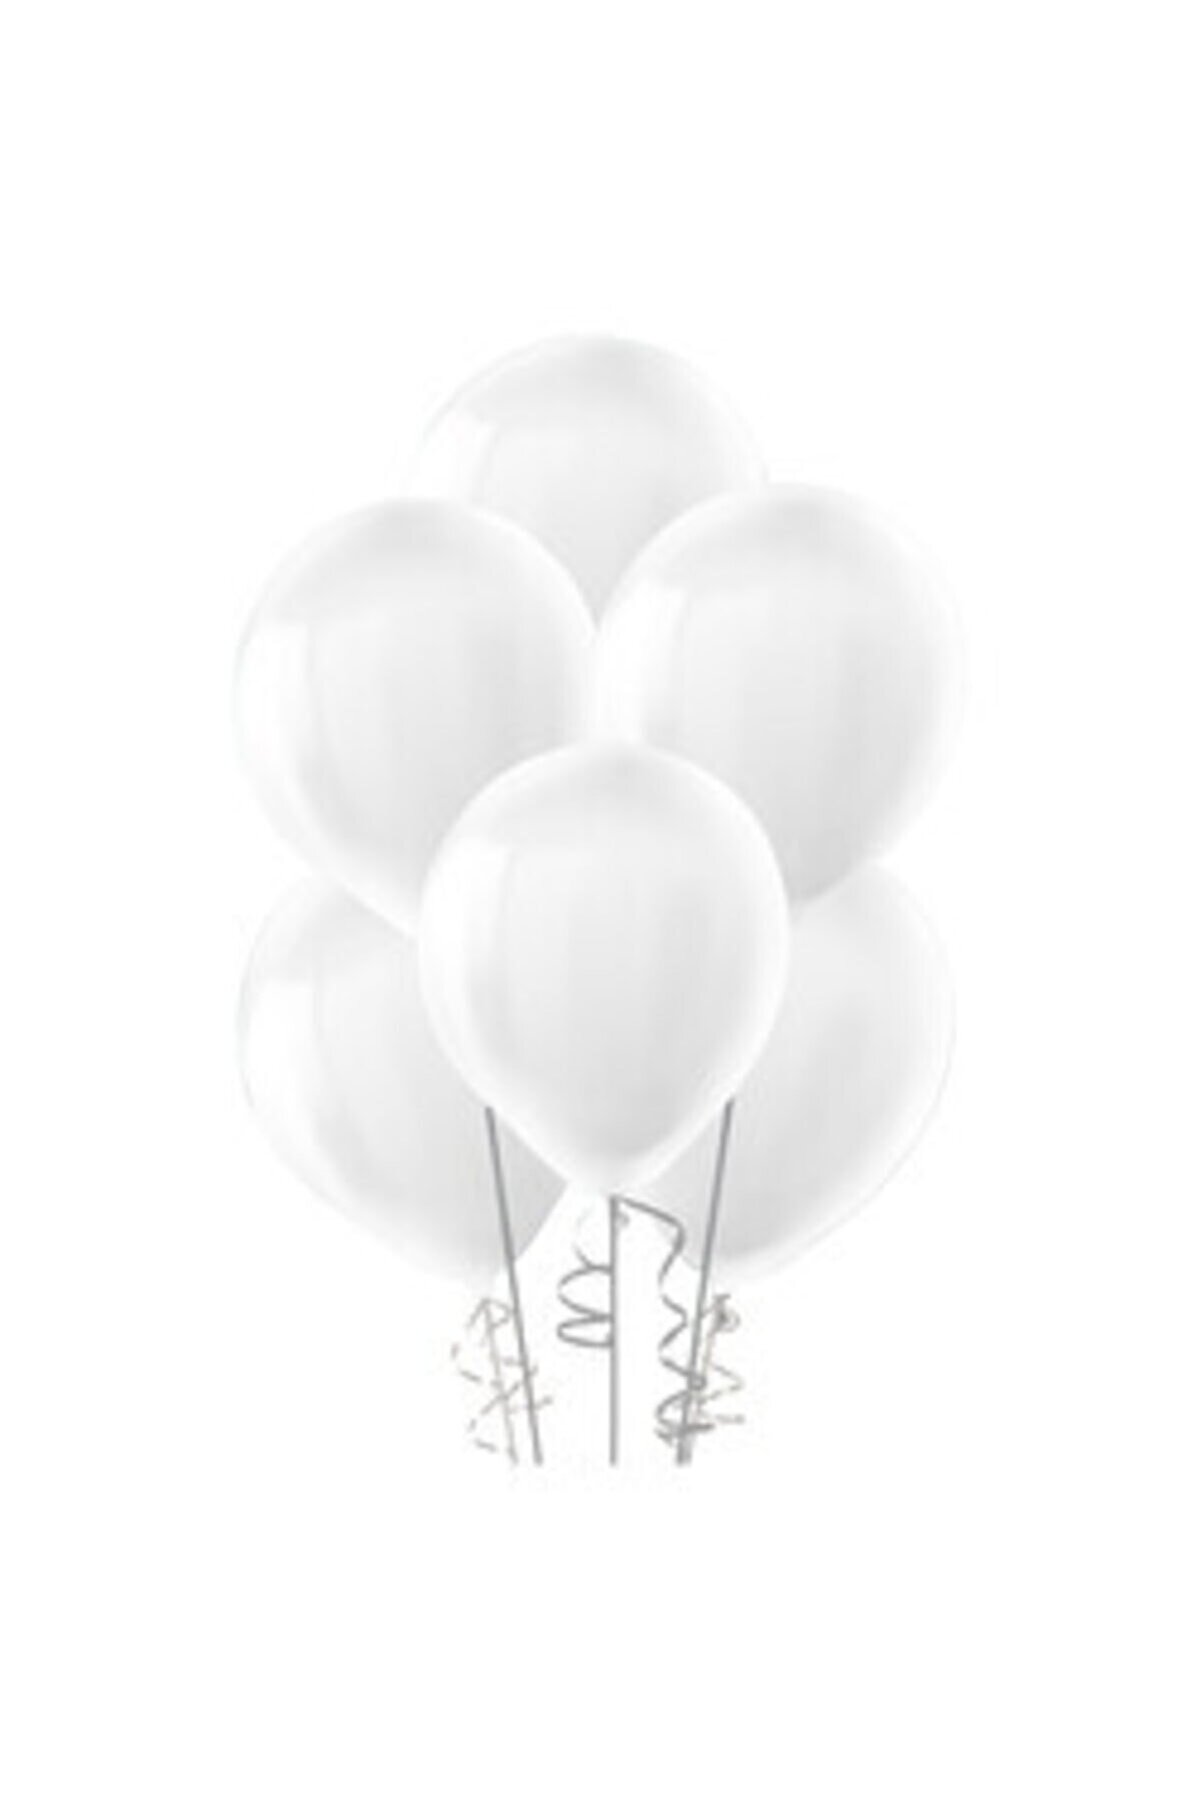 eğlencemarketi Pastel Balon Beyaz Dekor Balonu 20 Adet